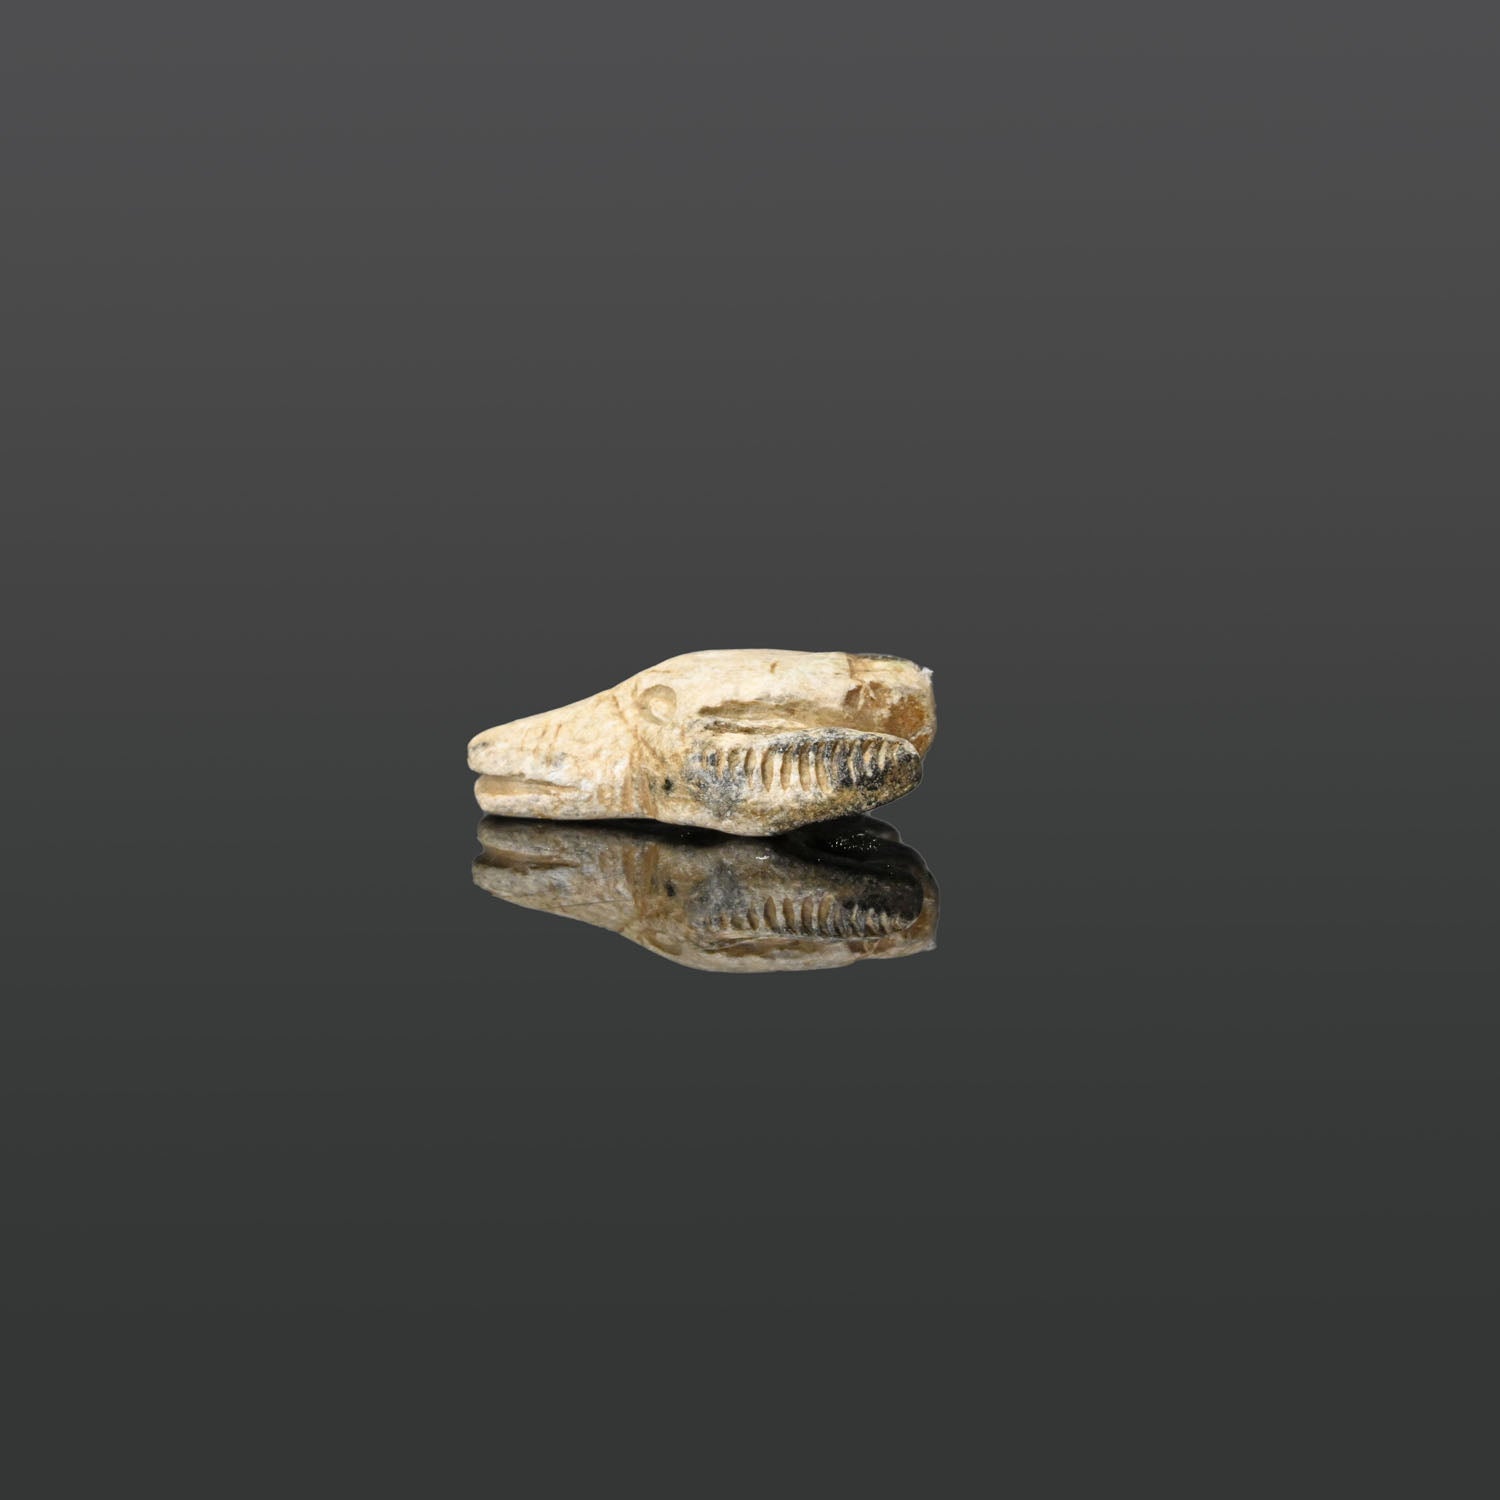 Ein ägyptisches Speckstein-Schakalkopf-Amulett, Mittleres Reich, ca. 2070 - 1600 v. Chr